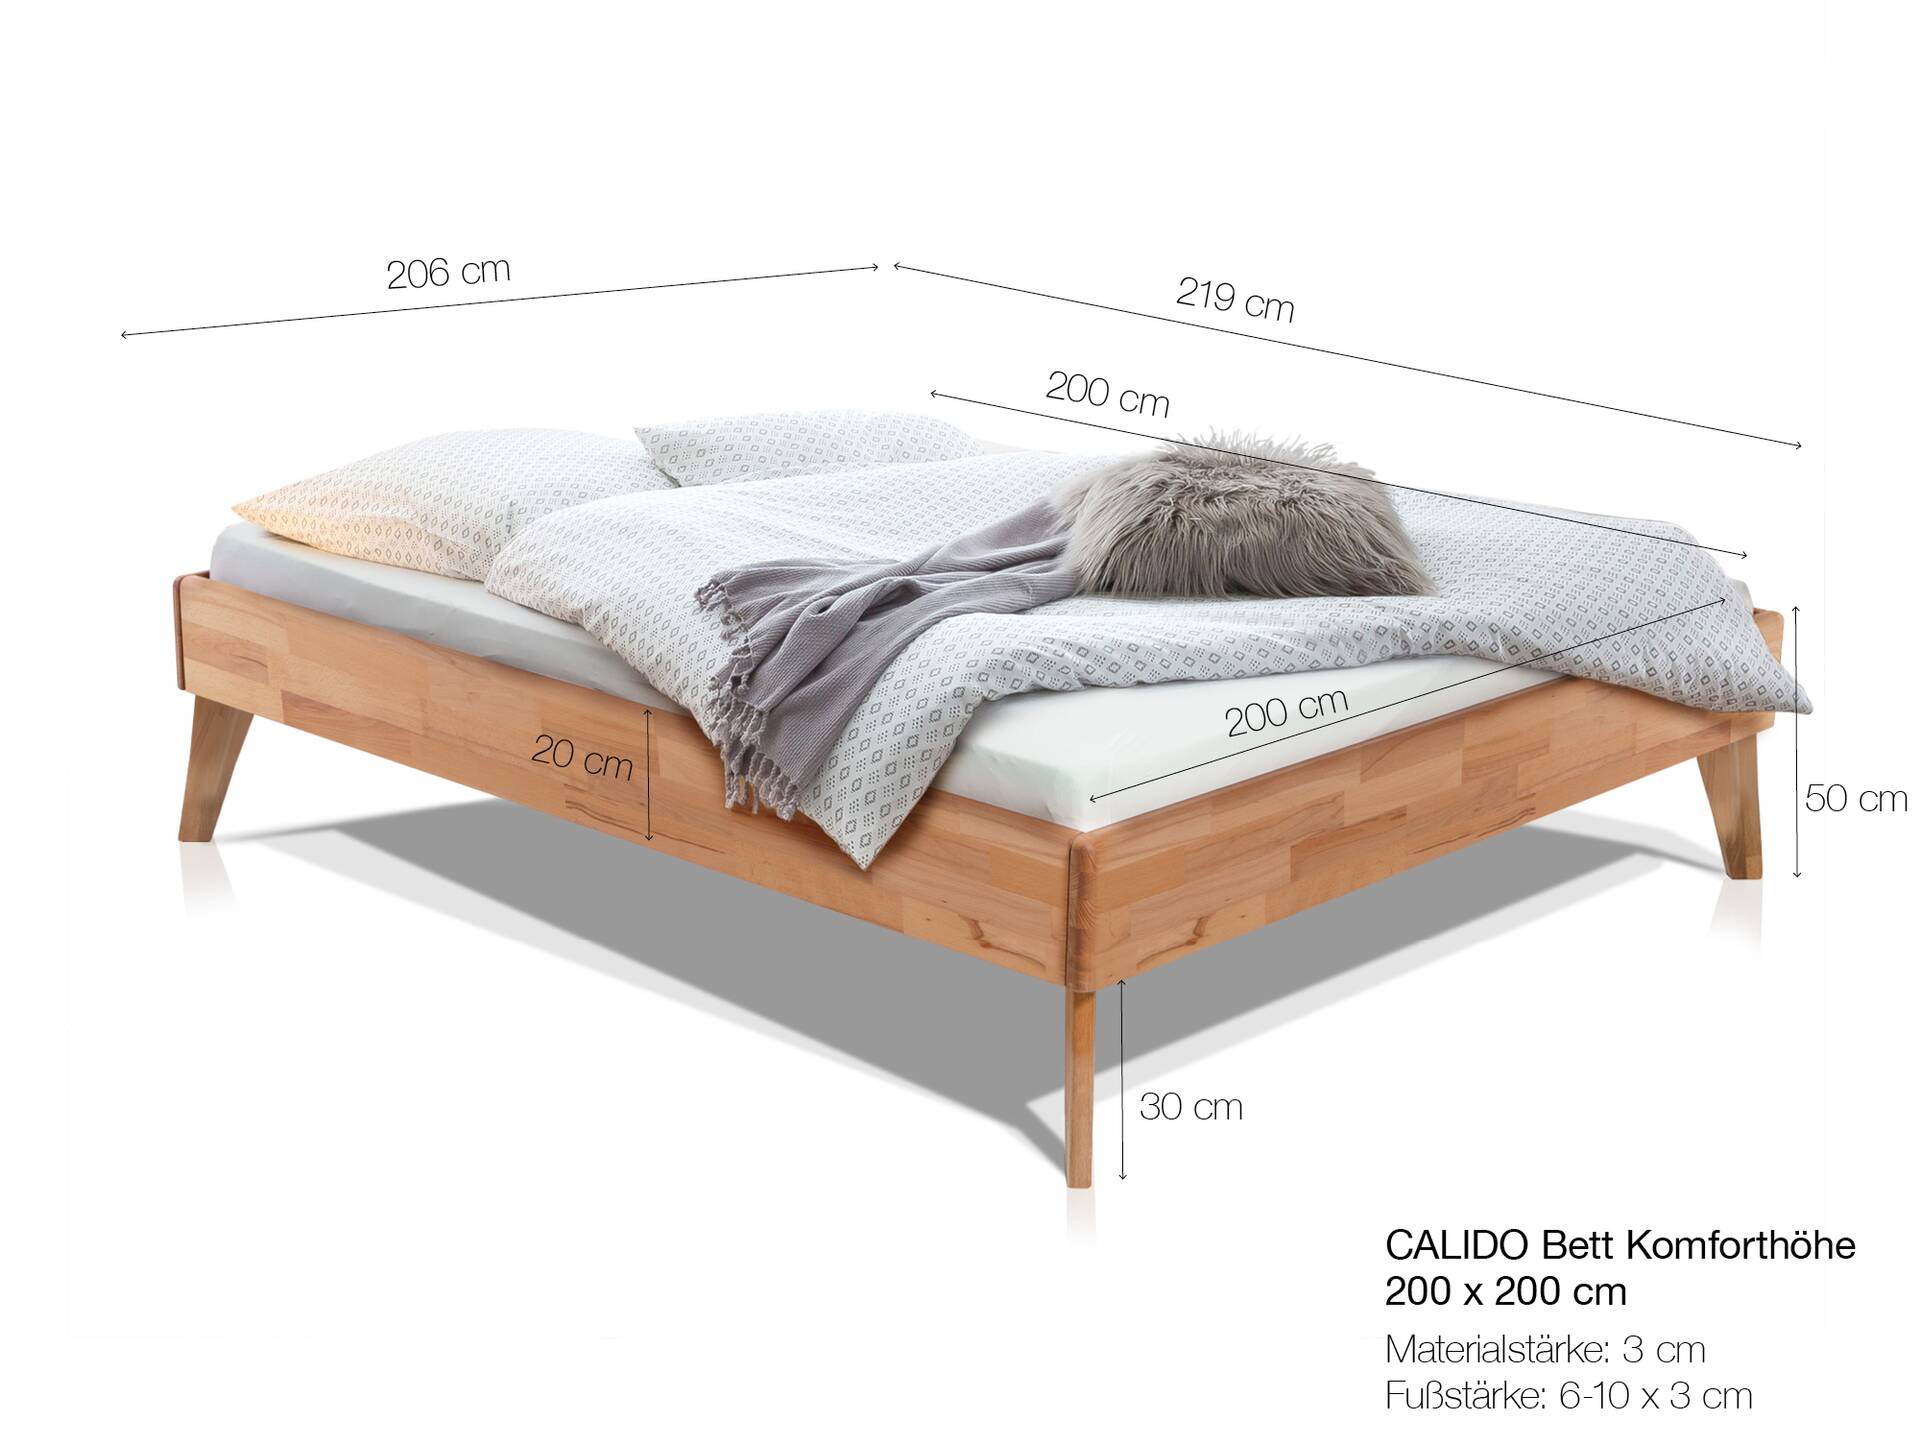 CALIDO 4-Fuß-Bett ohne Kopfteil, Material Massivholz 200 x 200 cm | Buche weiss lackiert | Komforthöhe